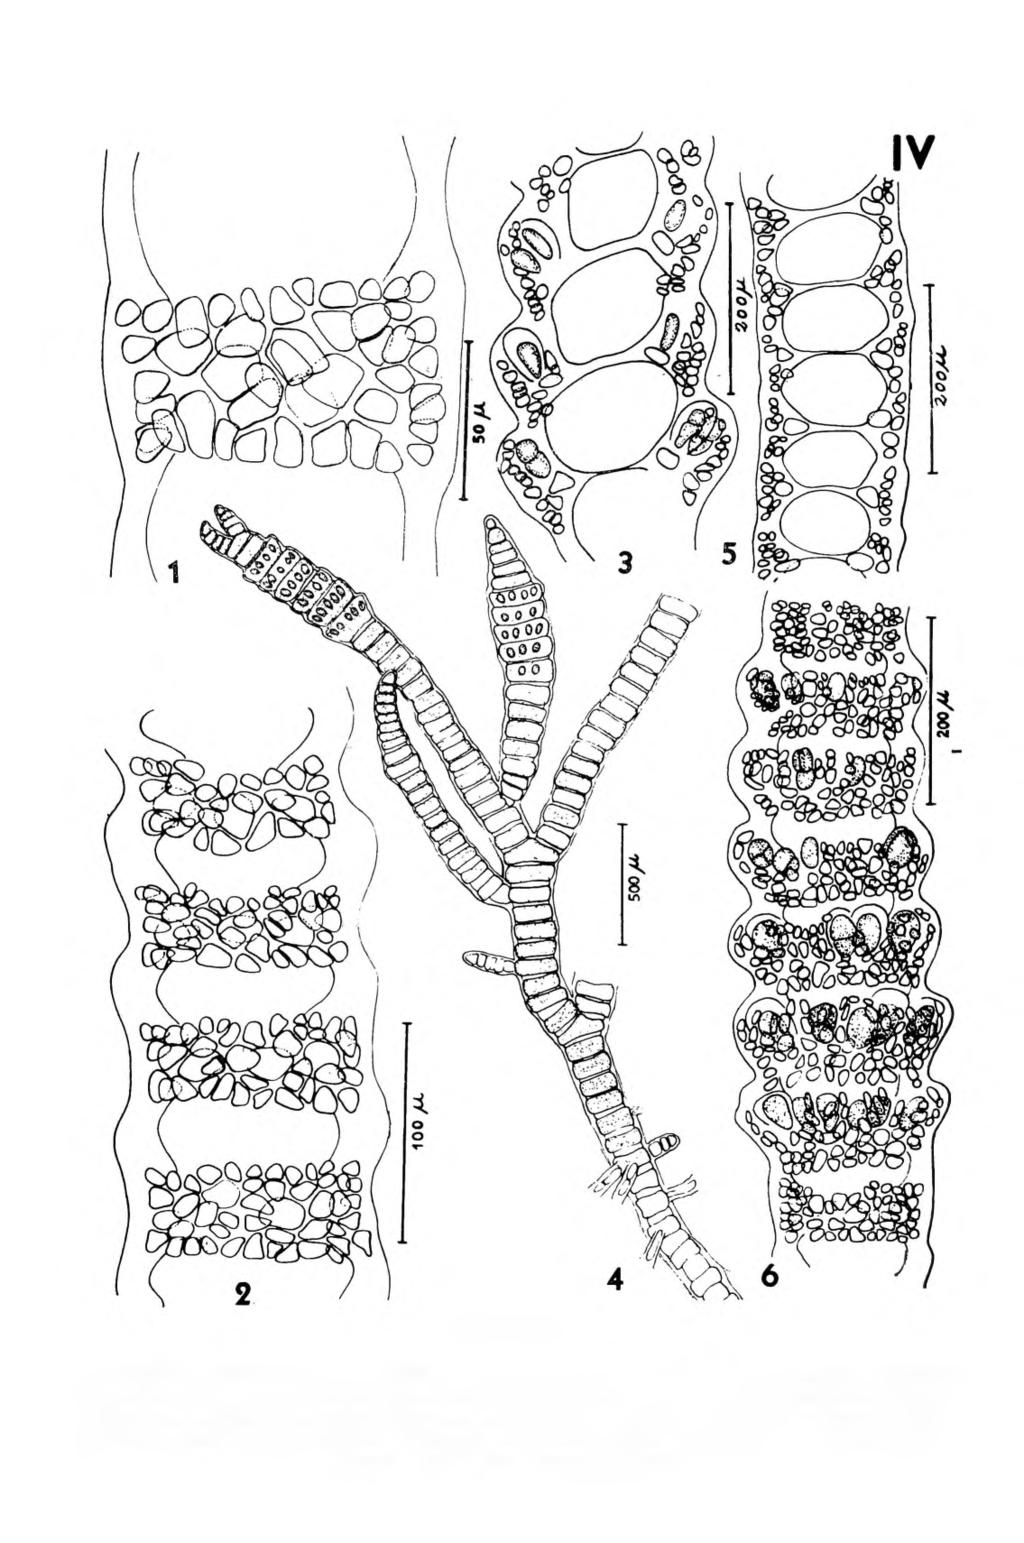 PRANCHA IV Ceramium vagabunde: 1 detalhe de um nó adulto; 2 nós da porção superior